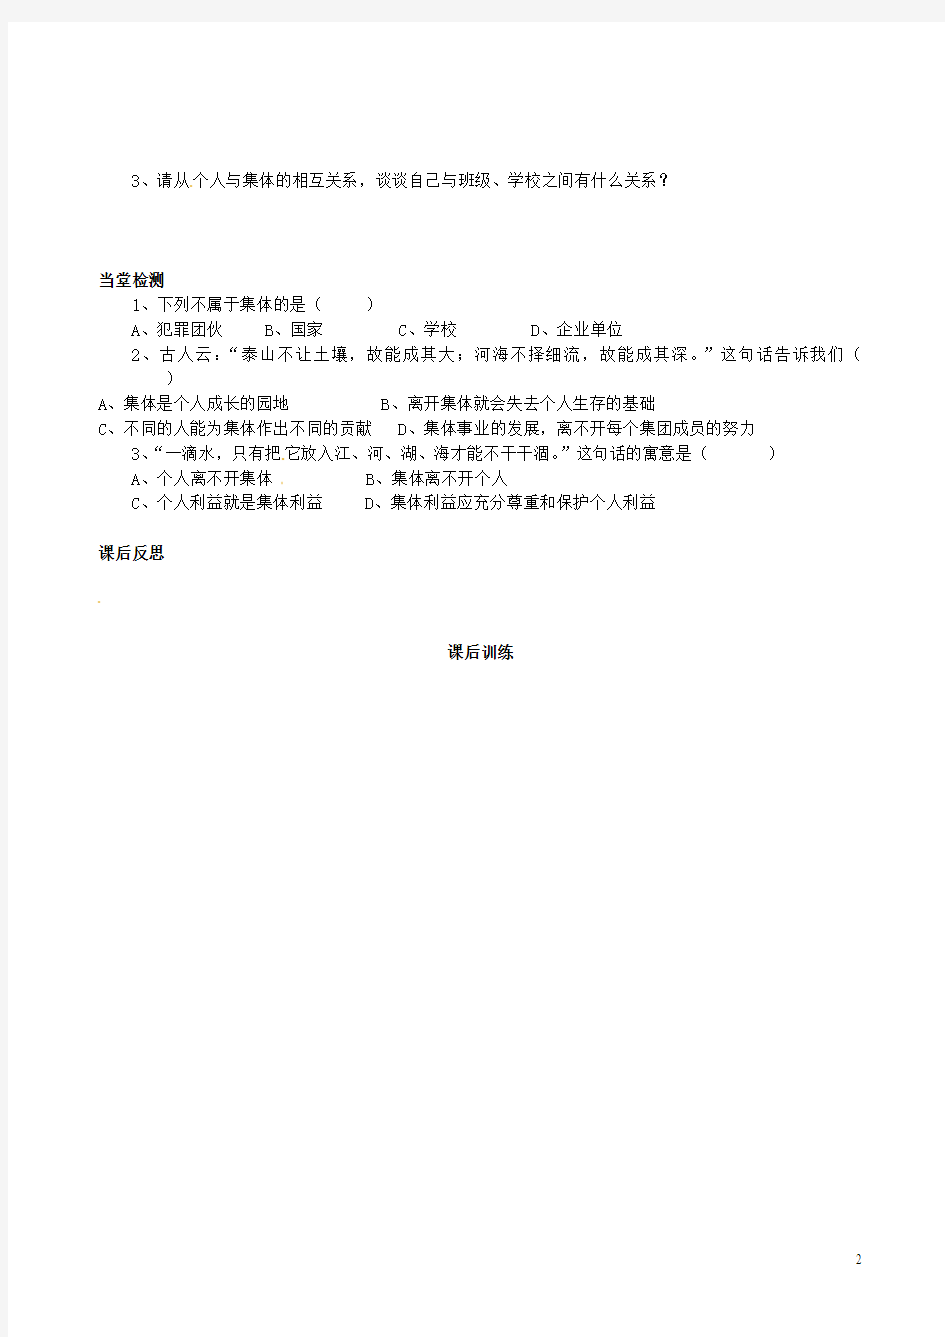 四川省岳池县第一中学七年级政治下册 第一单元 第二课《我与我们》一滴水与大海—个人与集体相互依存学案